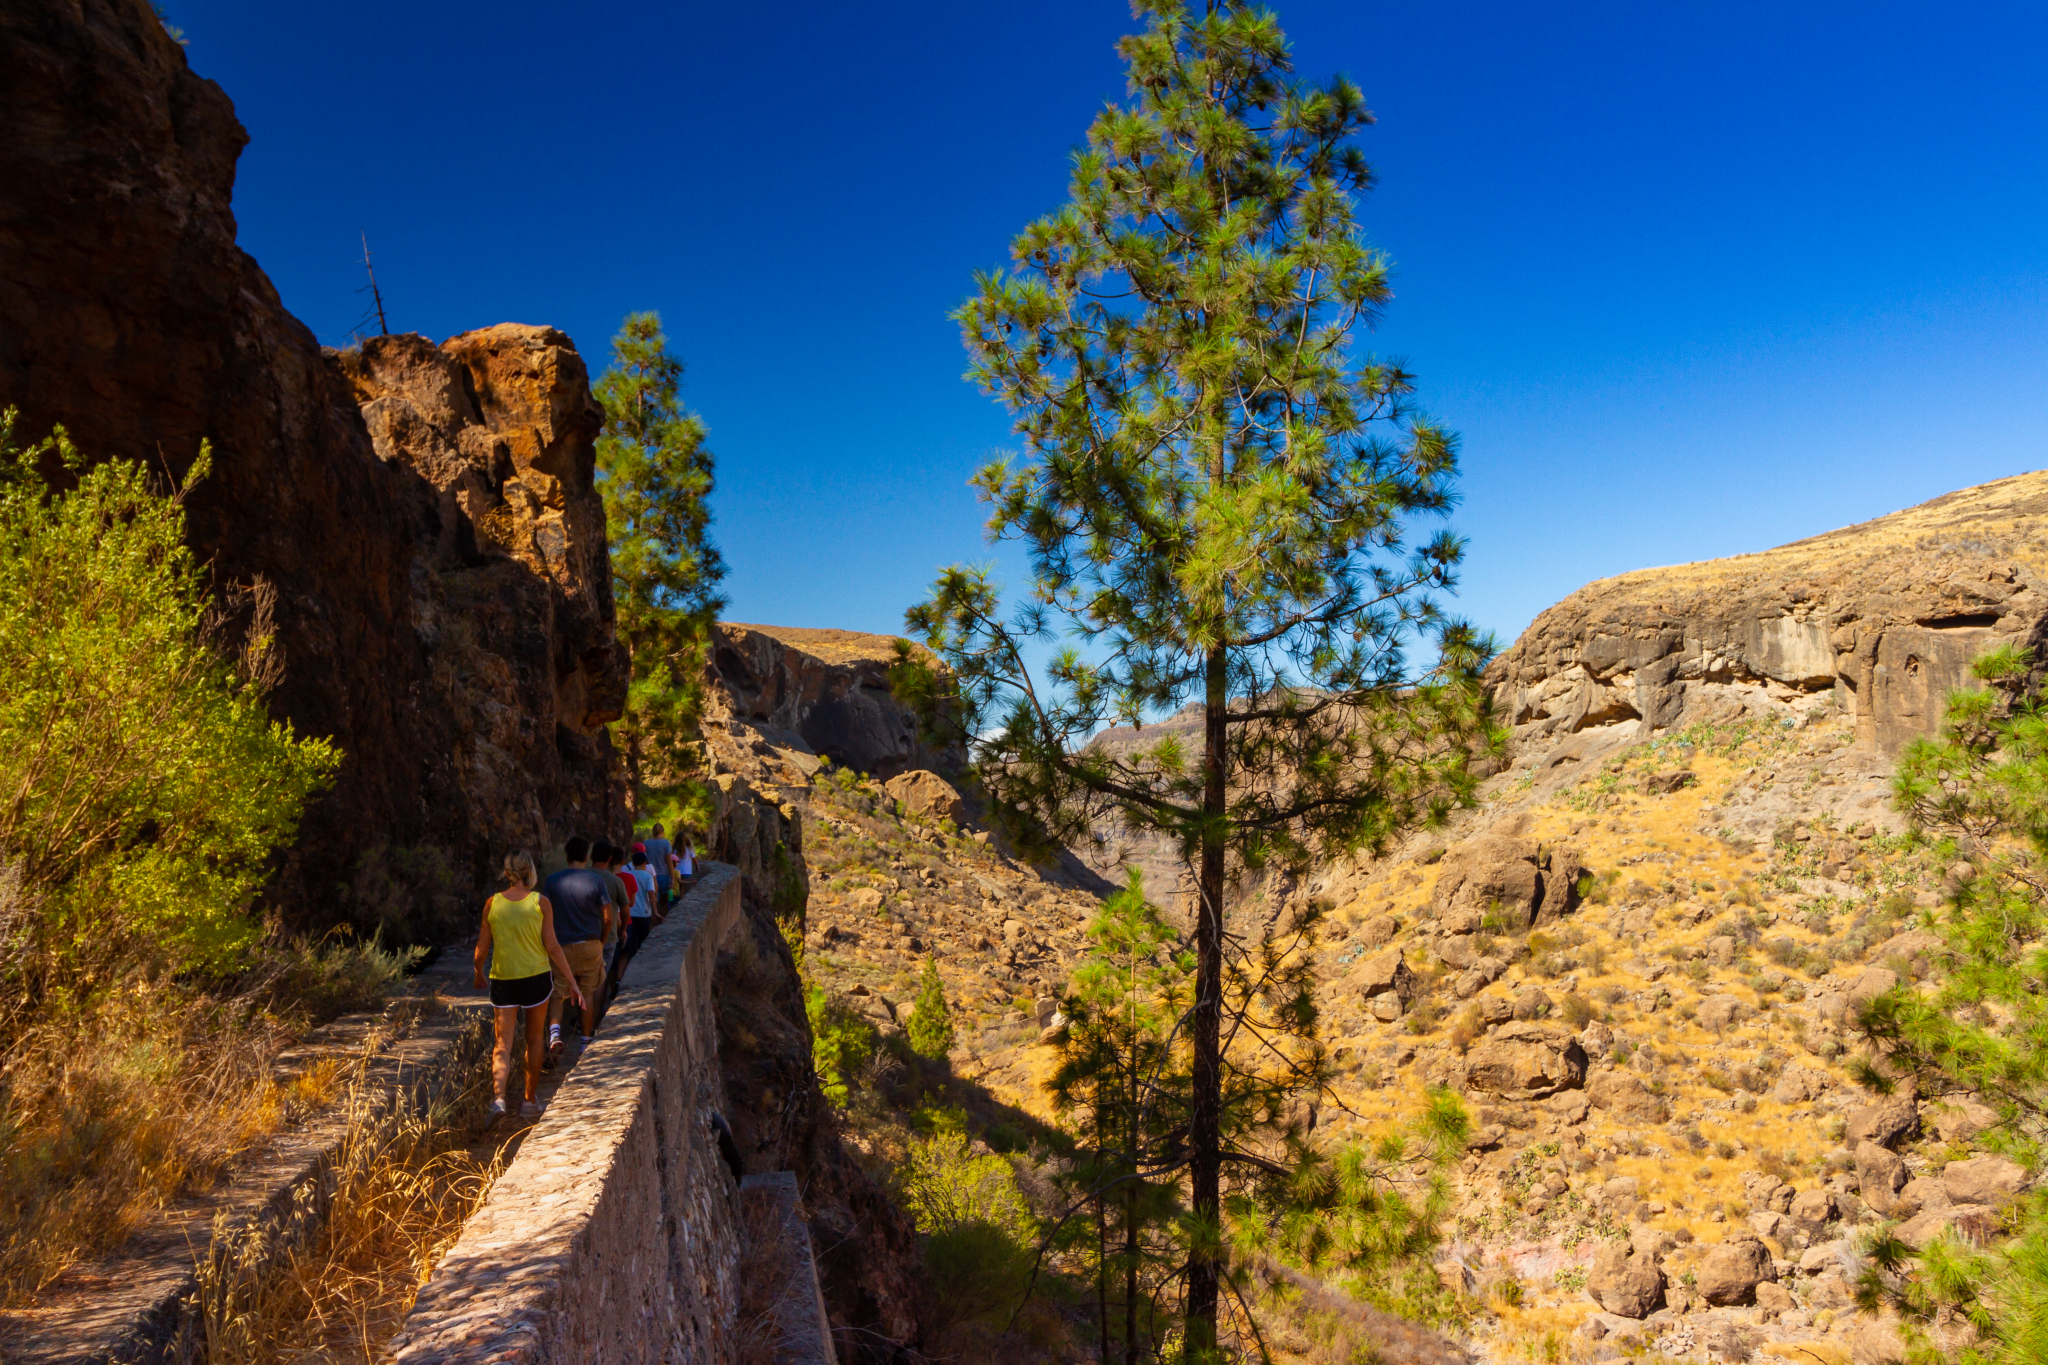 The landscape around Chira in Gran Canaria